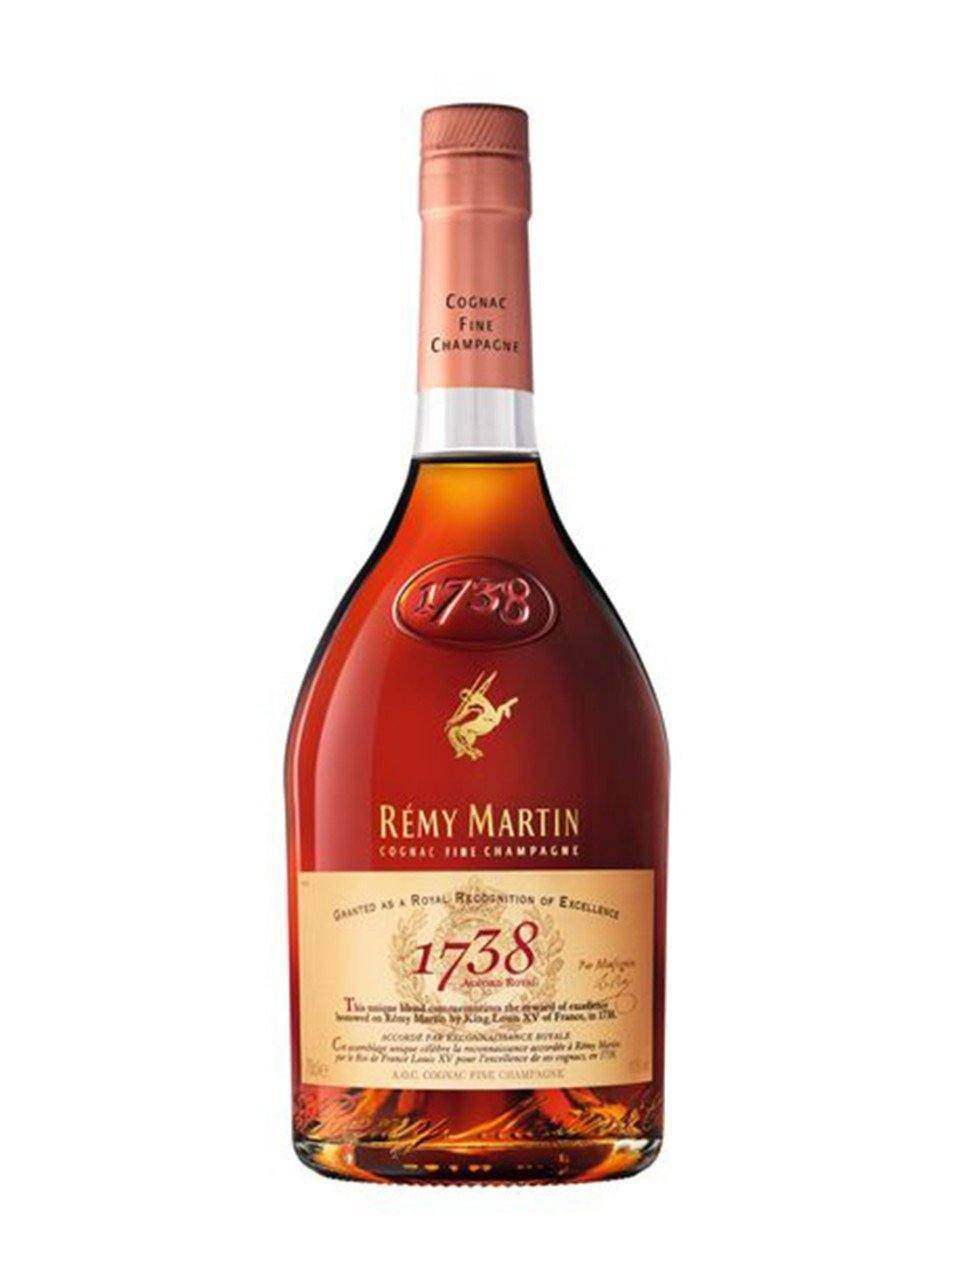 Remy Martin Club de Remy Martin Fine Champagne Cognac 700ml